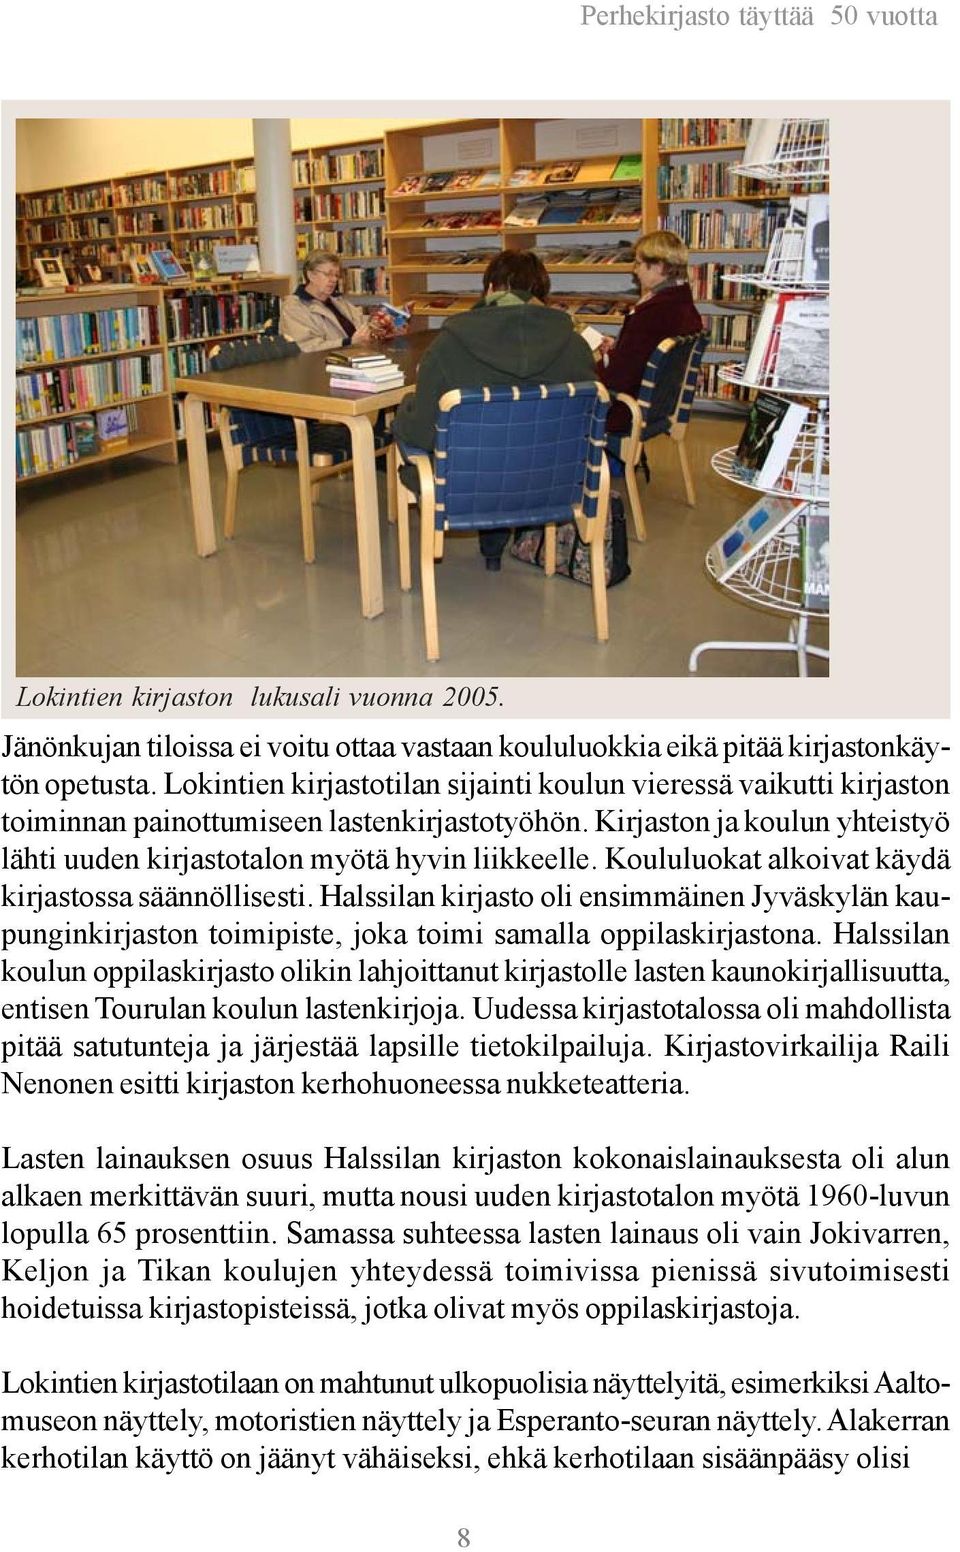 Koululuokat alkoivat käydä kirjastossa säännöllisesti. Halssilan kirjasto oli ensimmäinen Jyväskylän kaupunginkirjaston toimipiste, joka toimi samalla oppilaskirjastona.